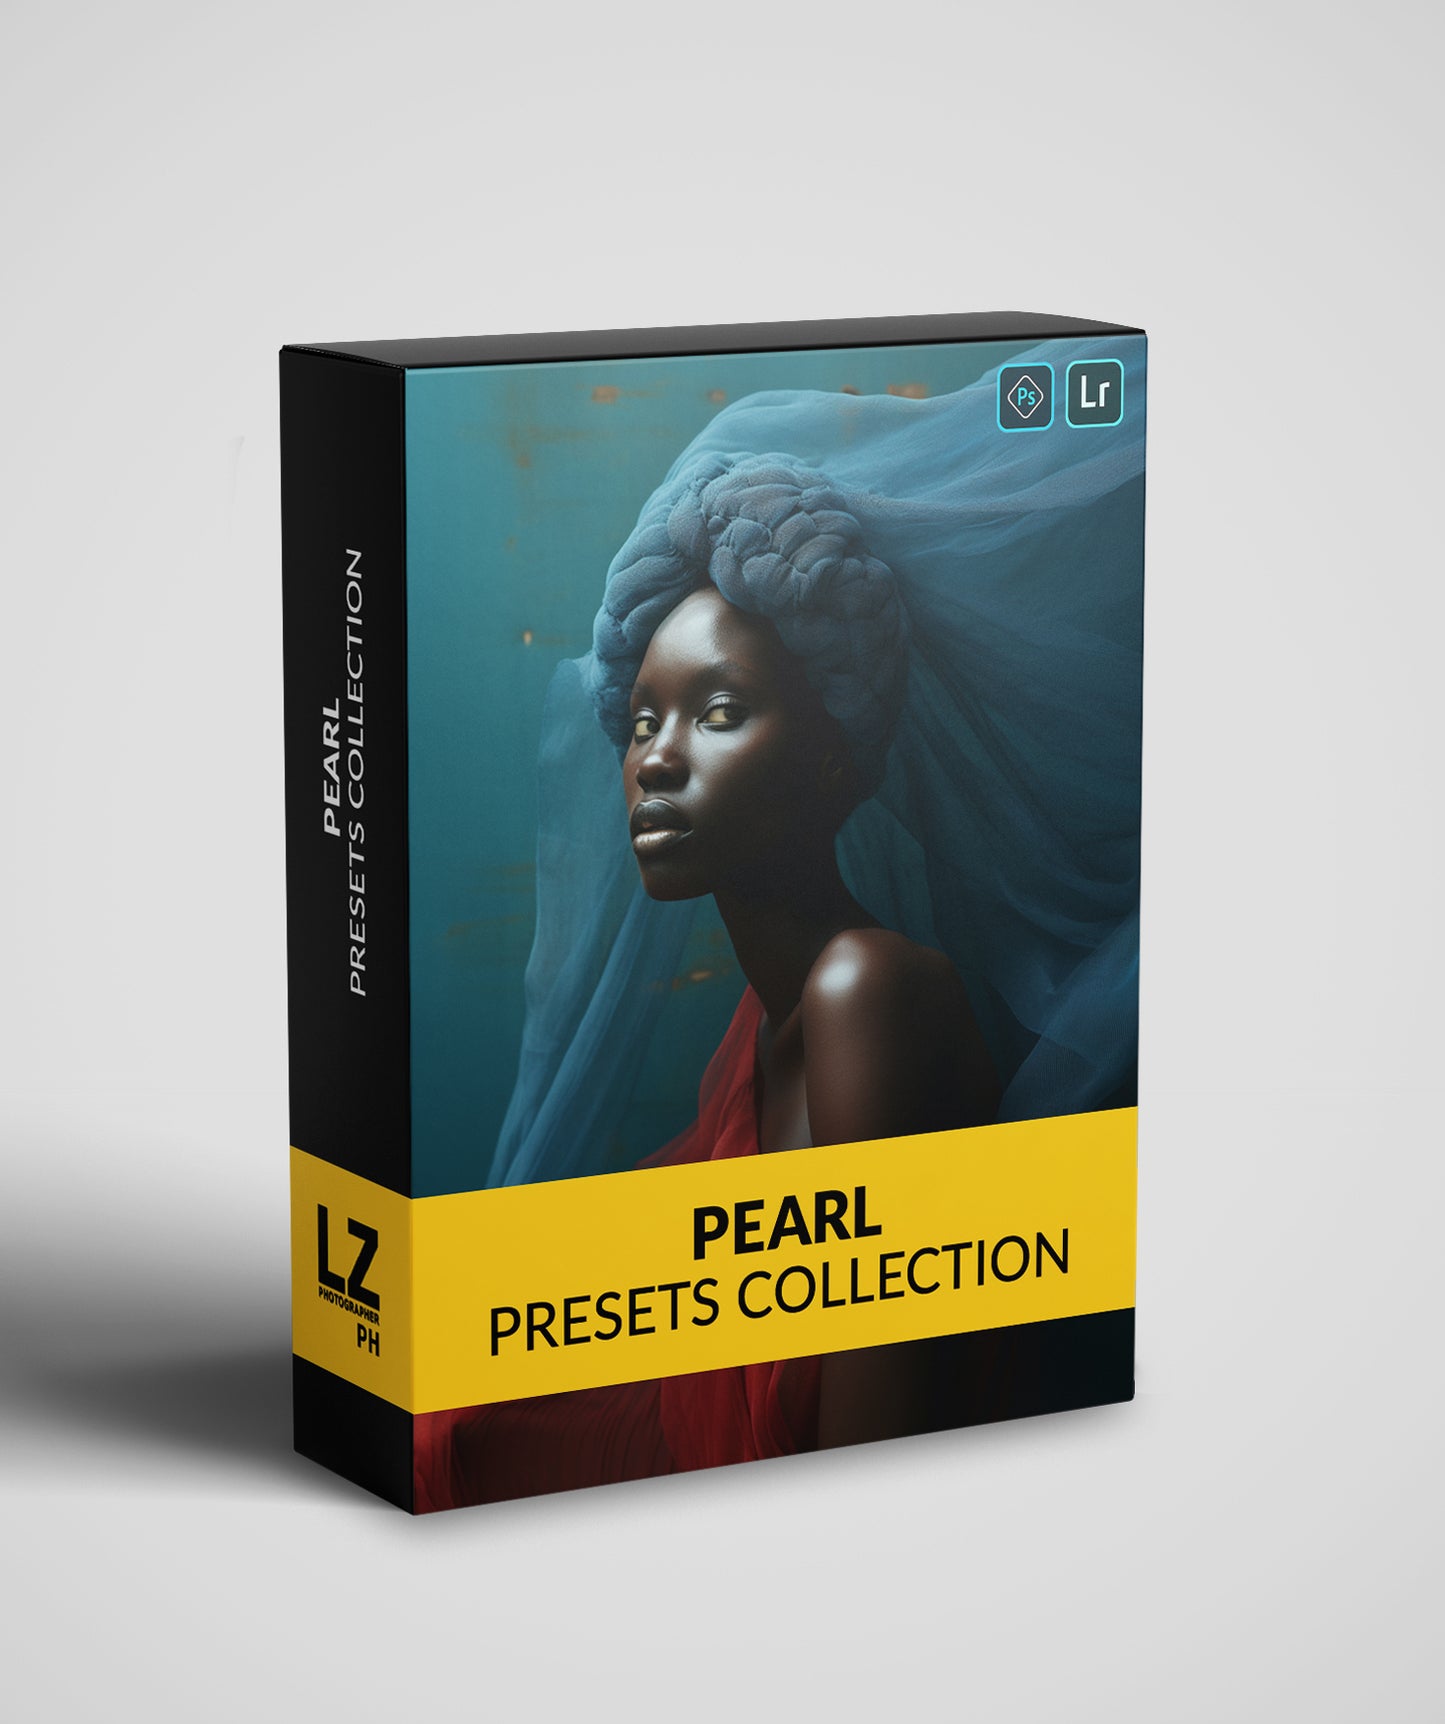 Collezione Pearl (11 presets)